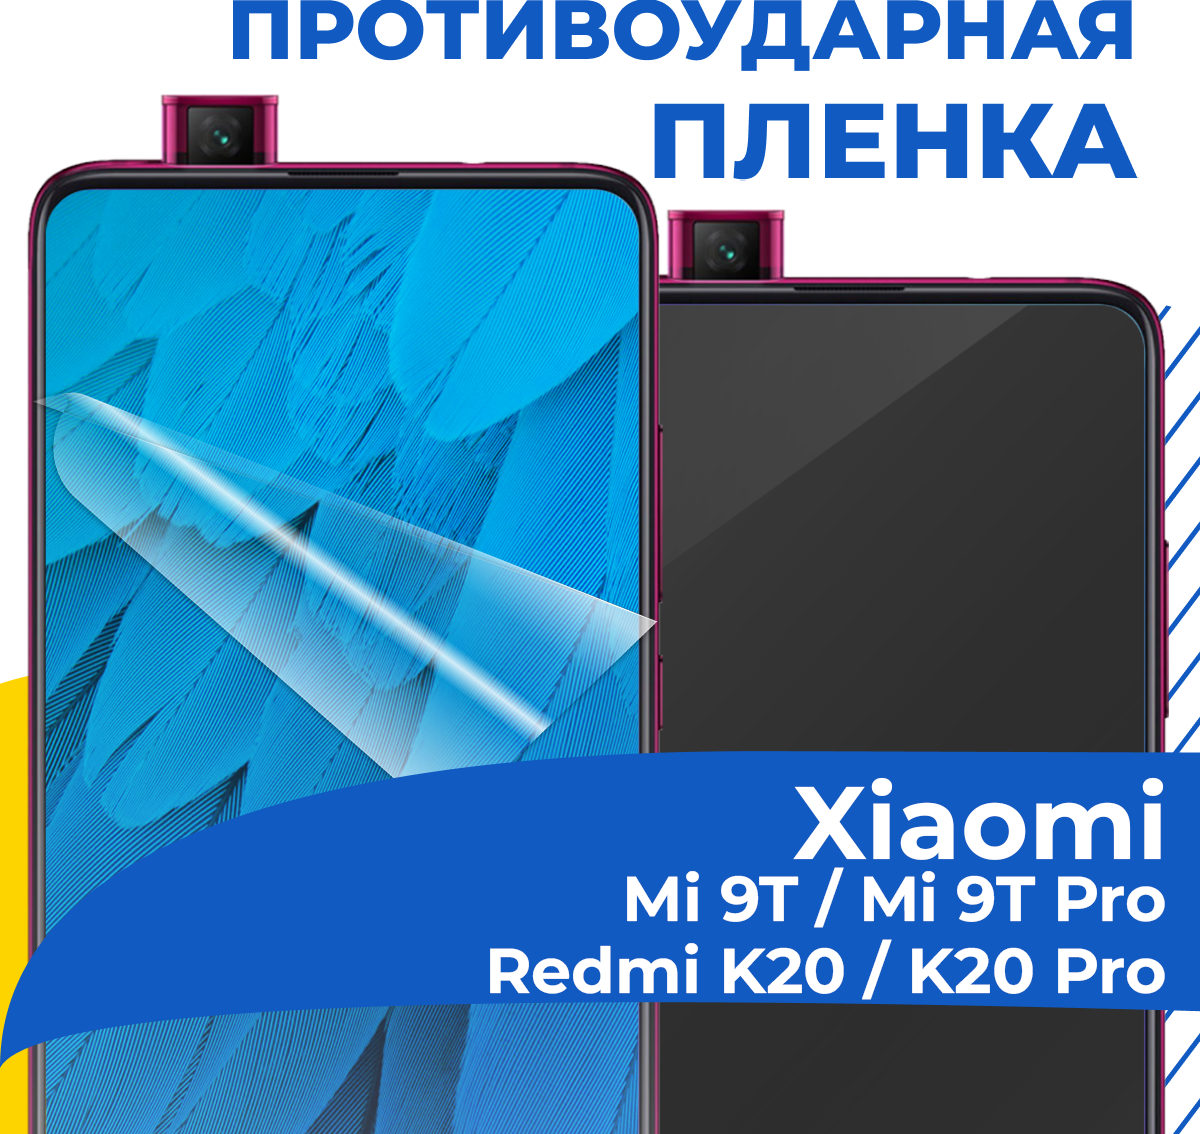 Гидрогелевая пленка для телефона Xiaomi Mi 9T / Mi 9T Pro / Redmi K20 / K20 Pro / Защитная пленка на смартфон Сяоми Ми 9Т / Ми 9Т Про / К20 / К20 Про